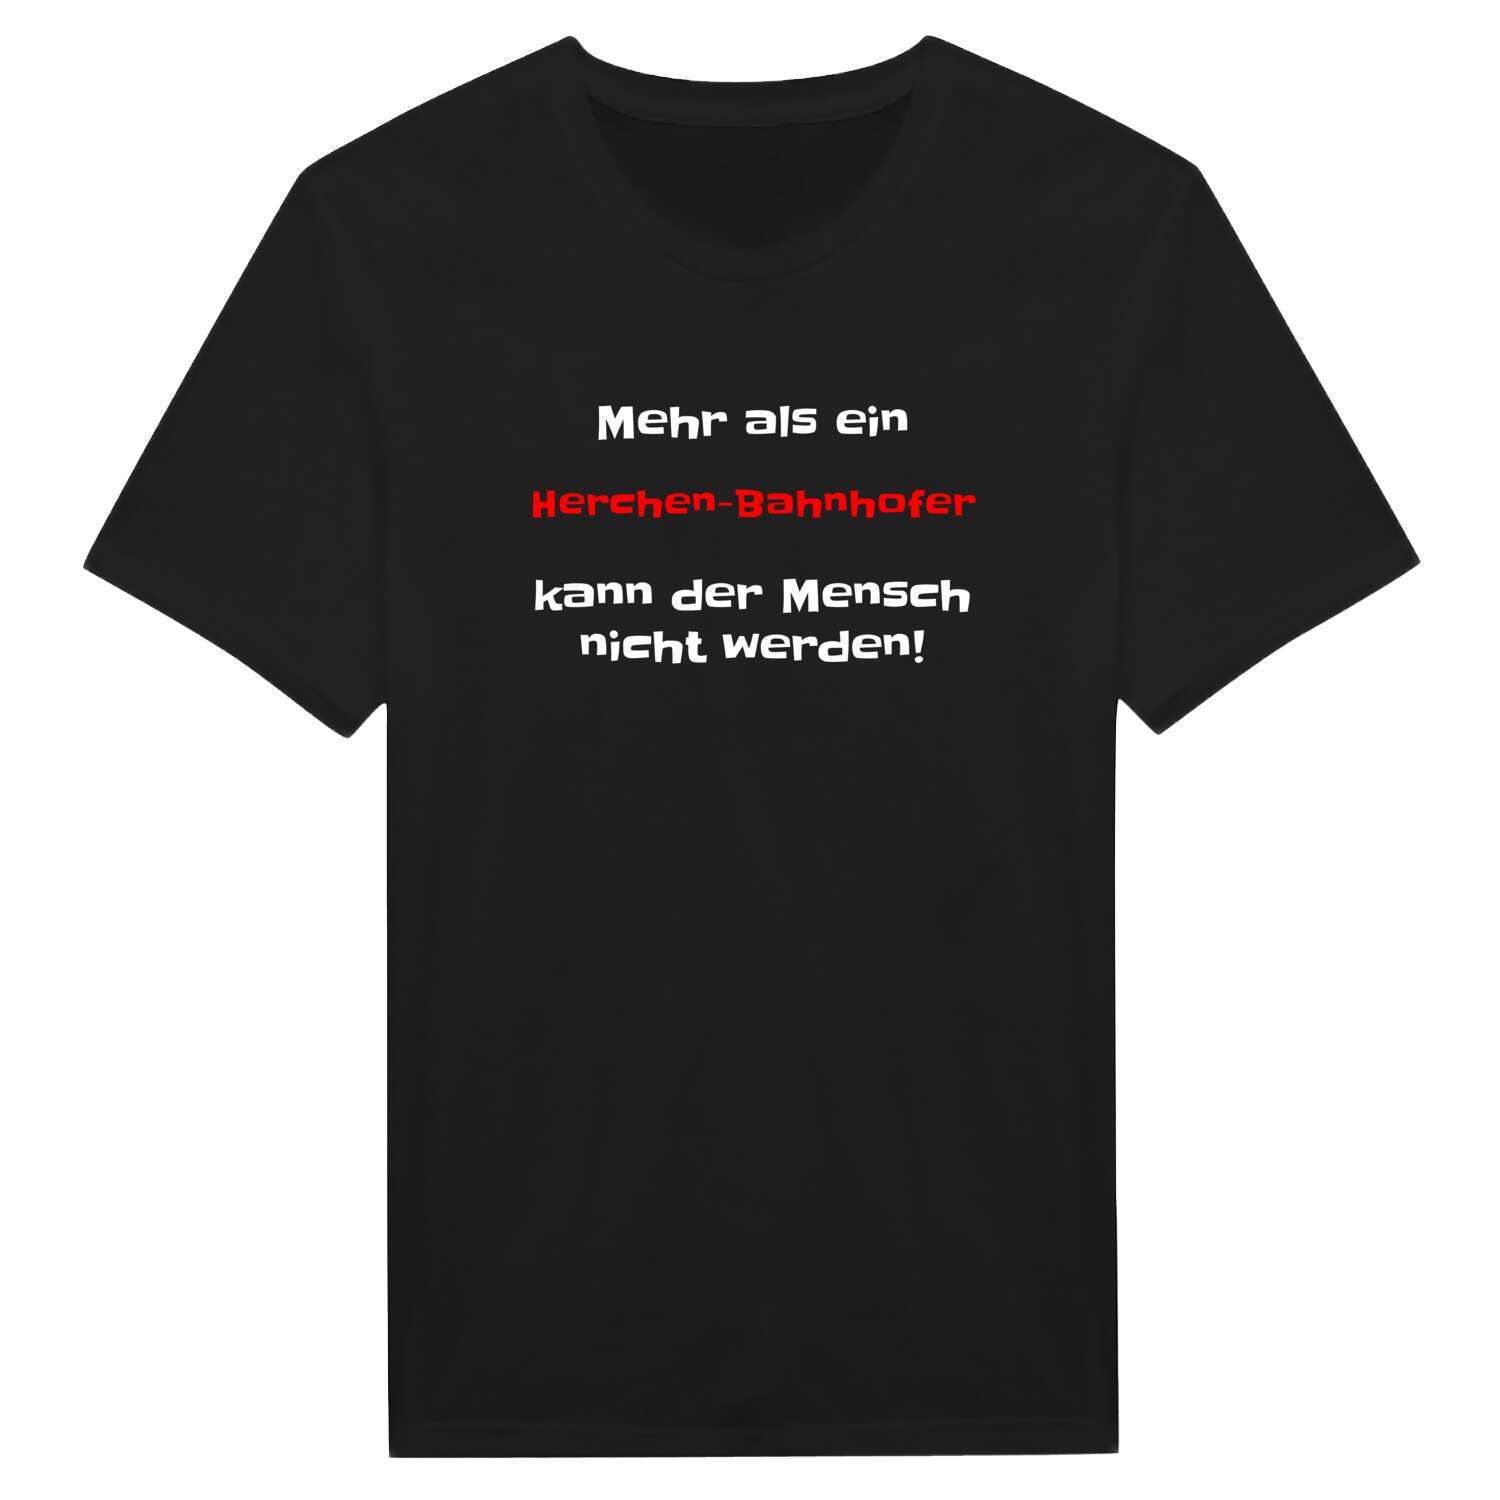 Herchen-Bahnhof T-Shirt »Mehr als ein«